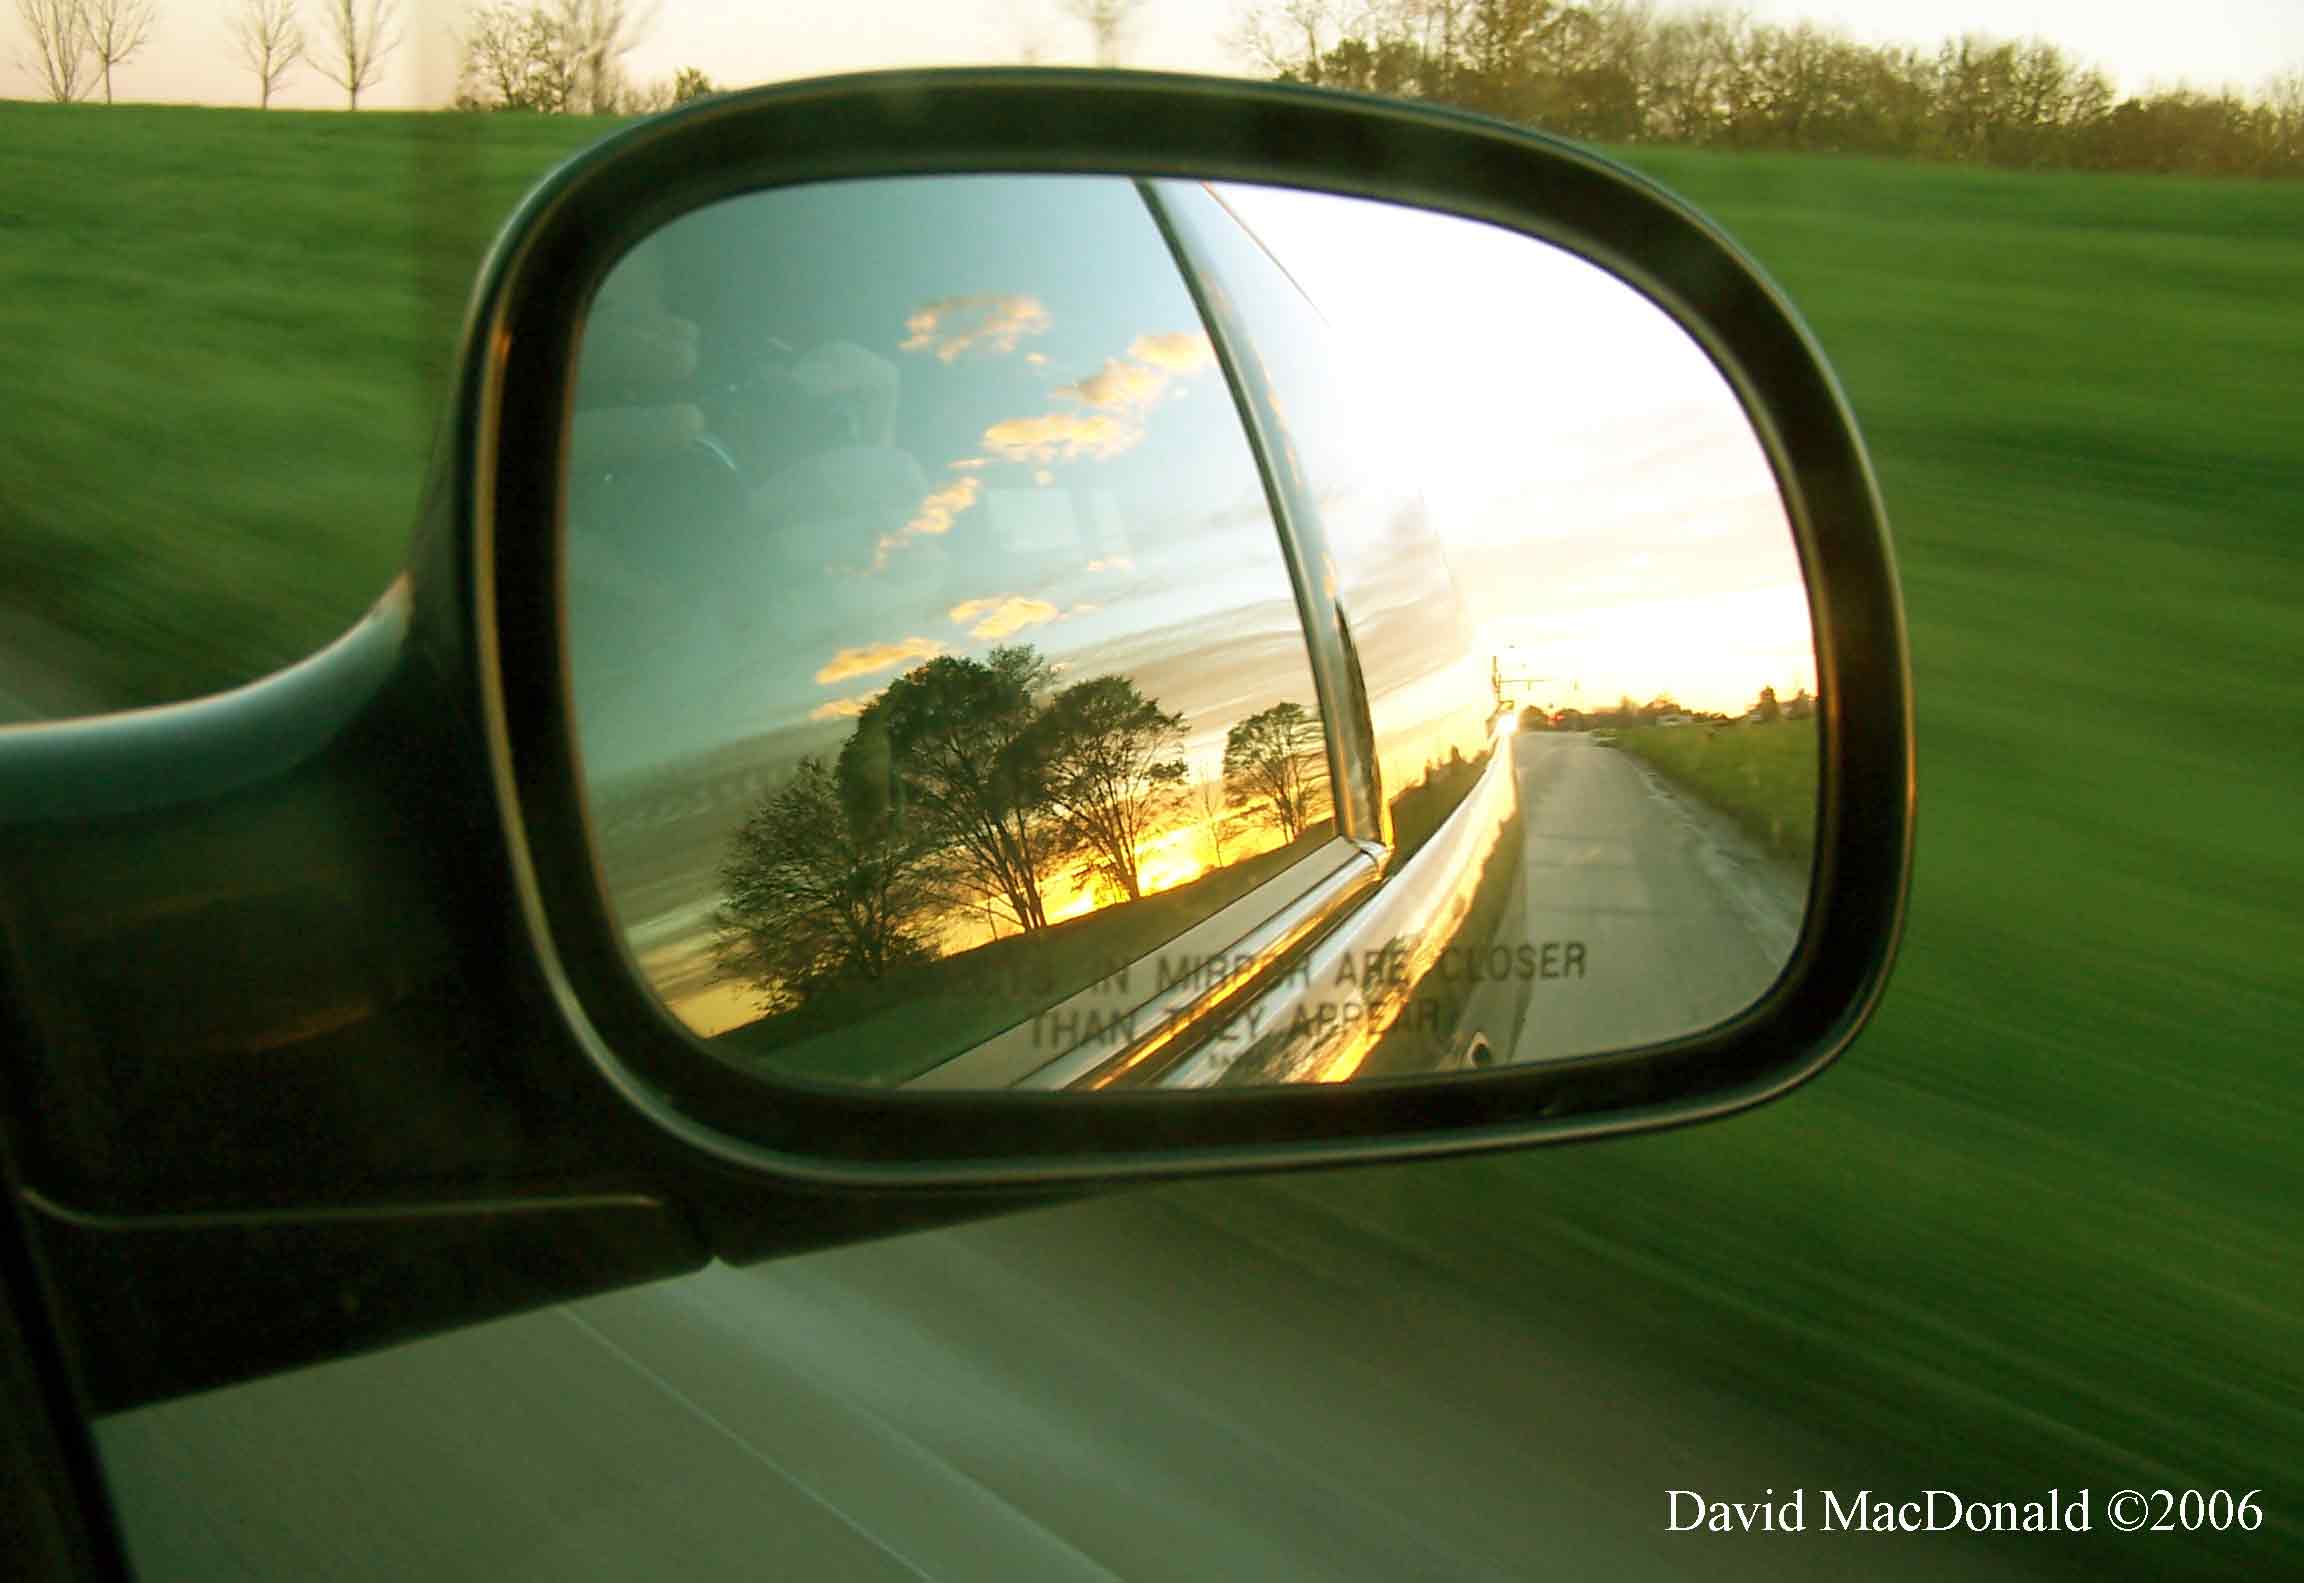 rearview mirrors | Ponderings